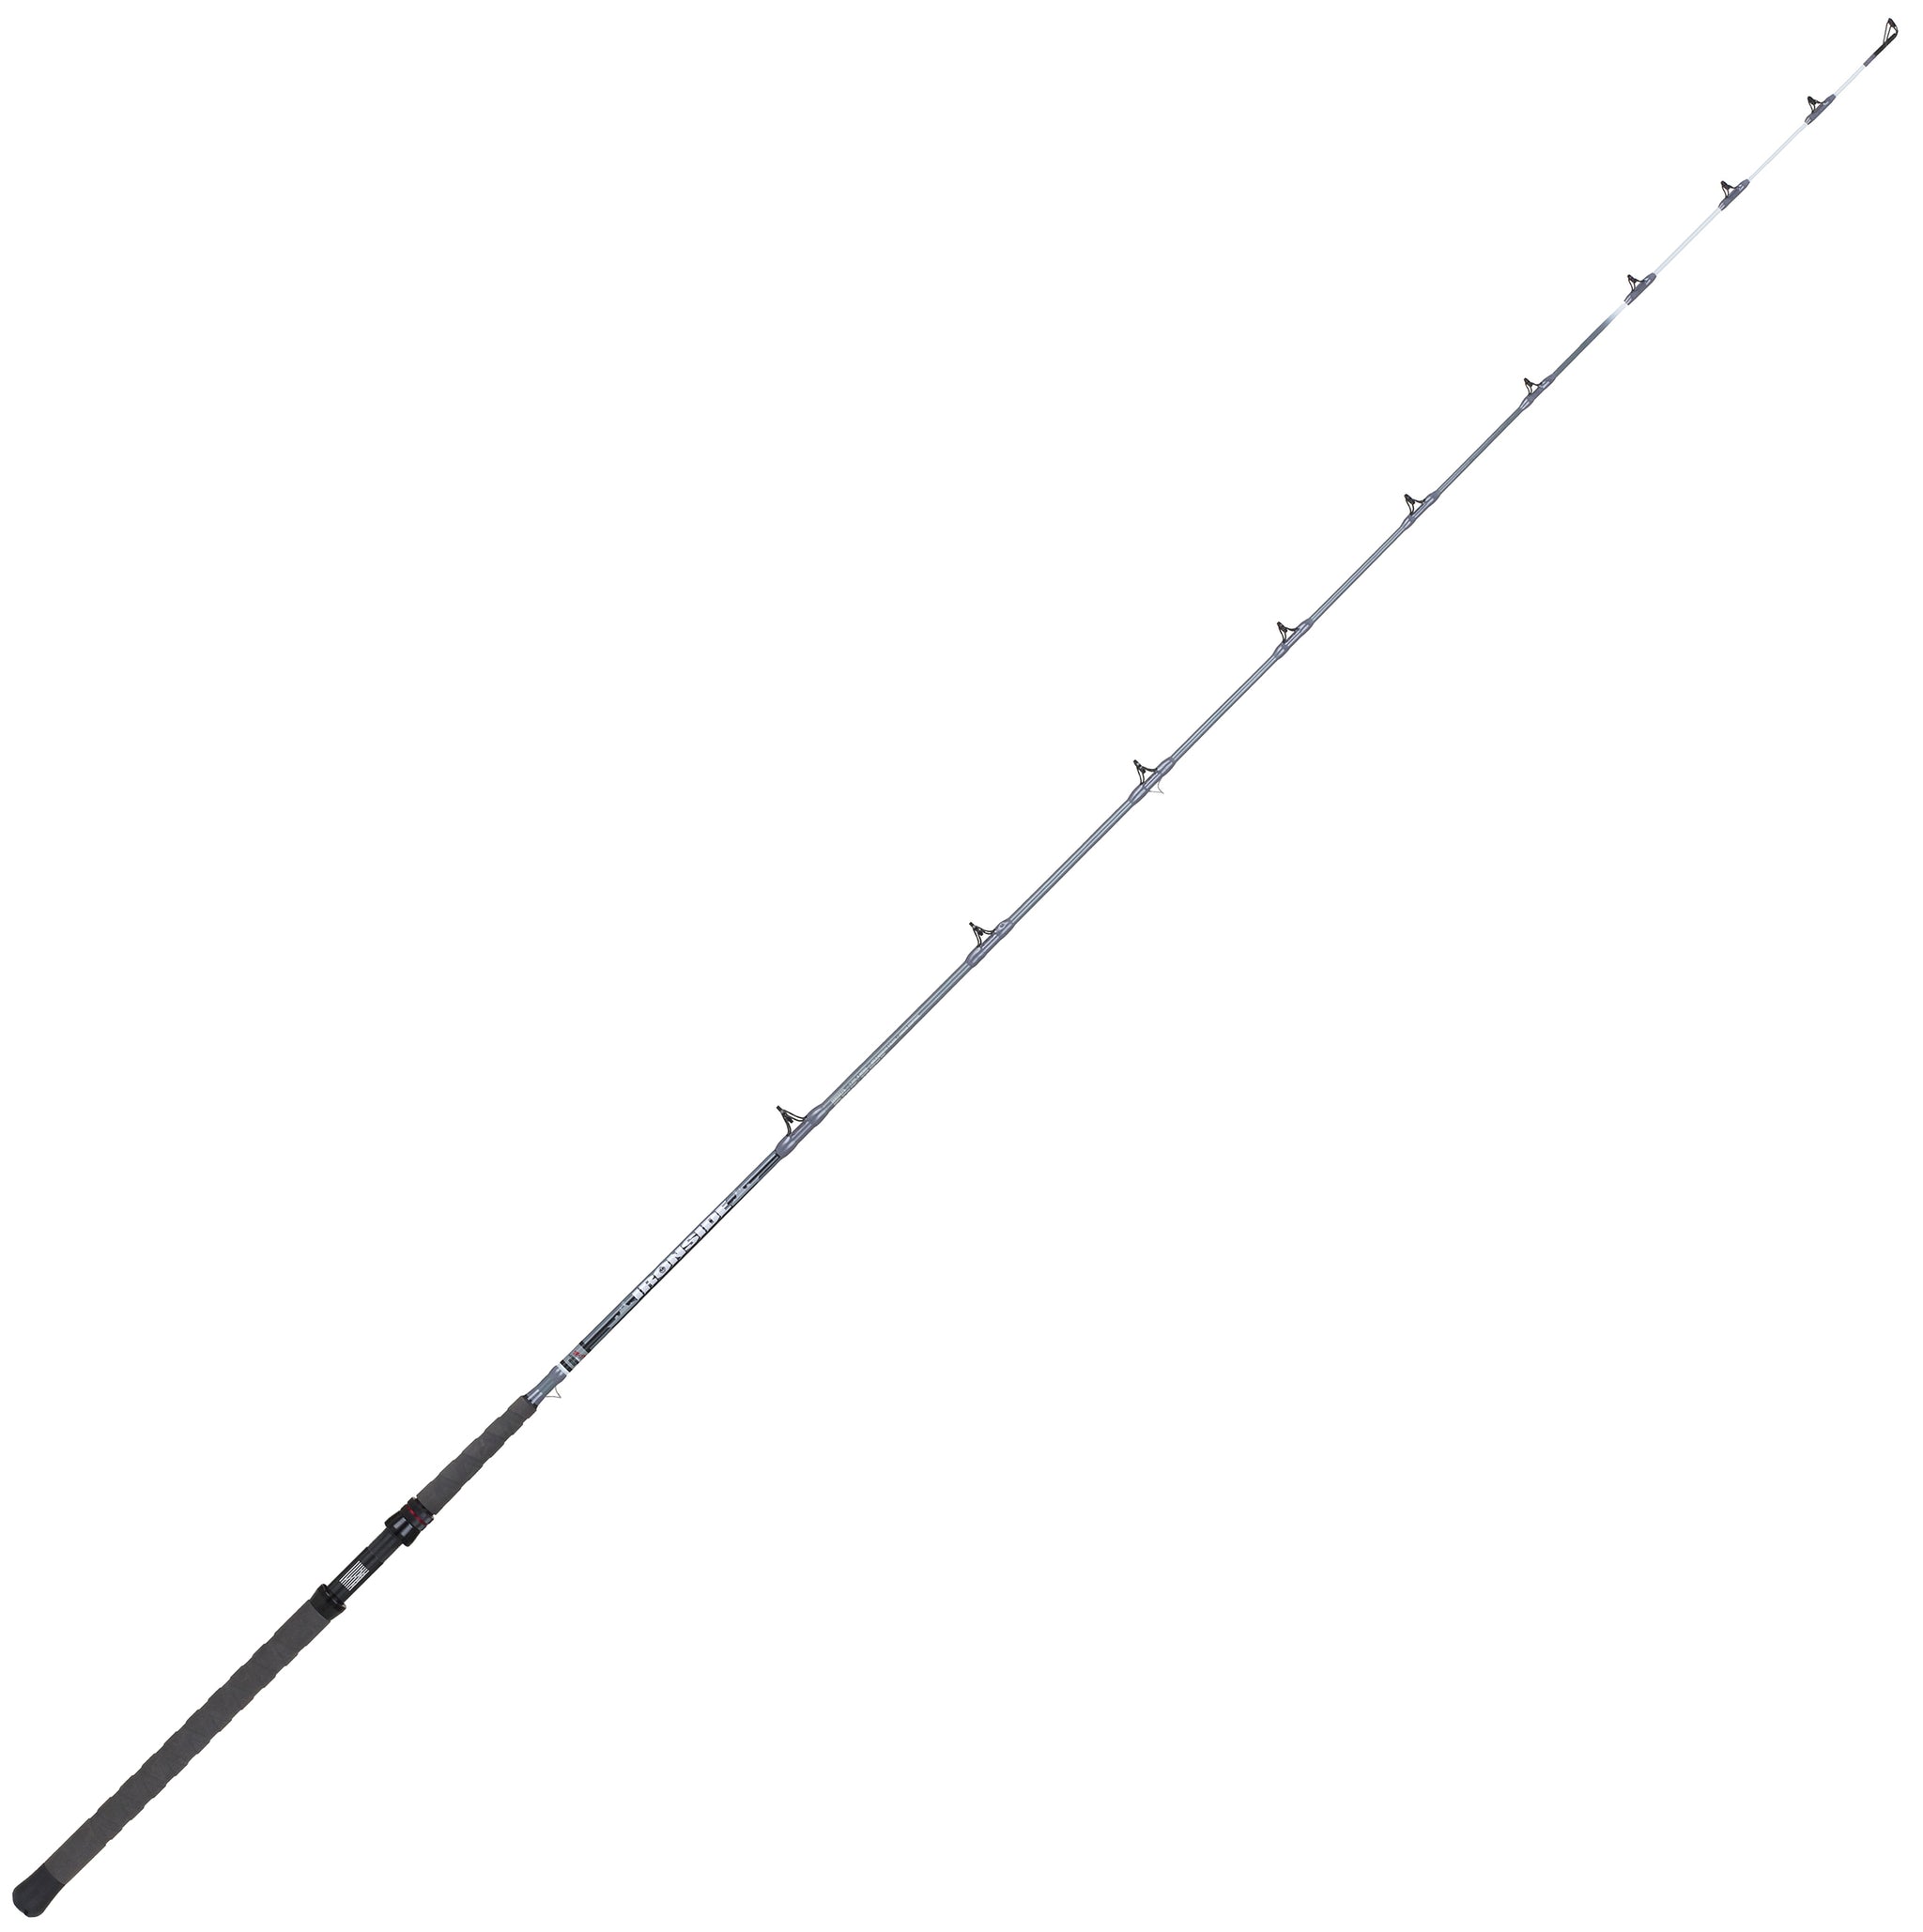 Buy Favorite Fishing Spinning Rod Balance Online at desertcartCyprus